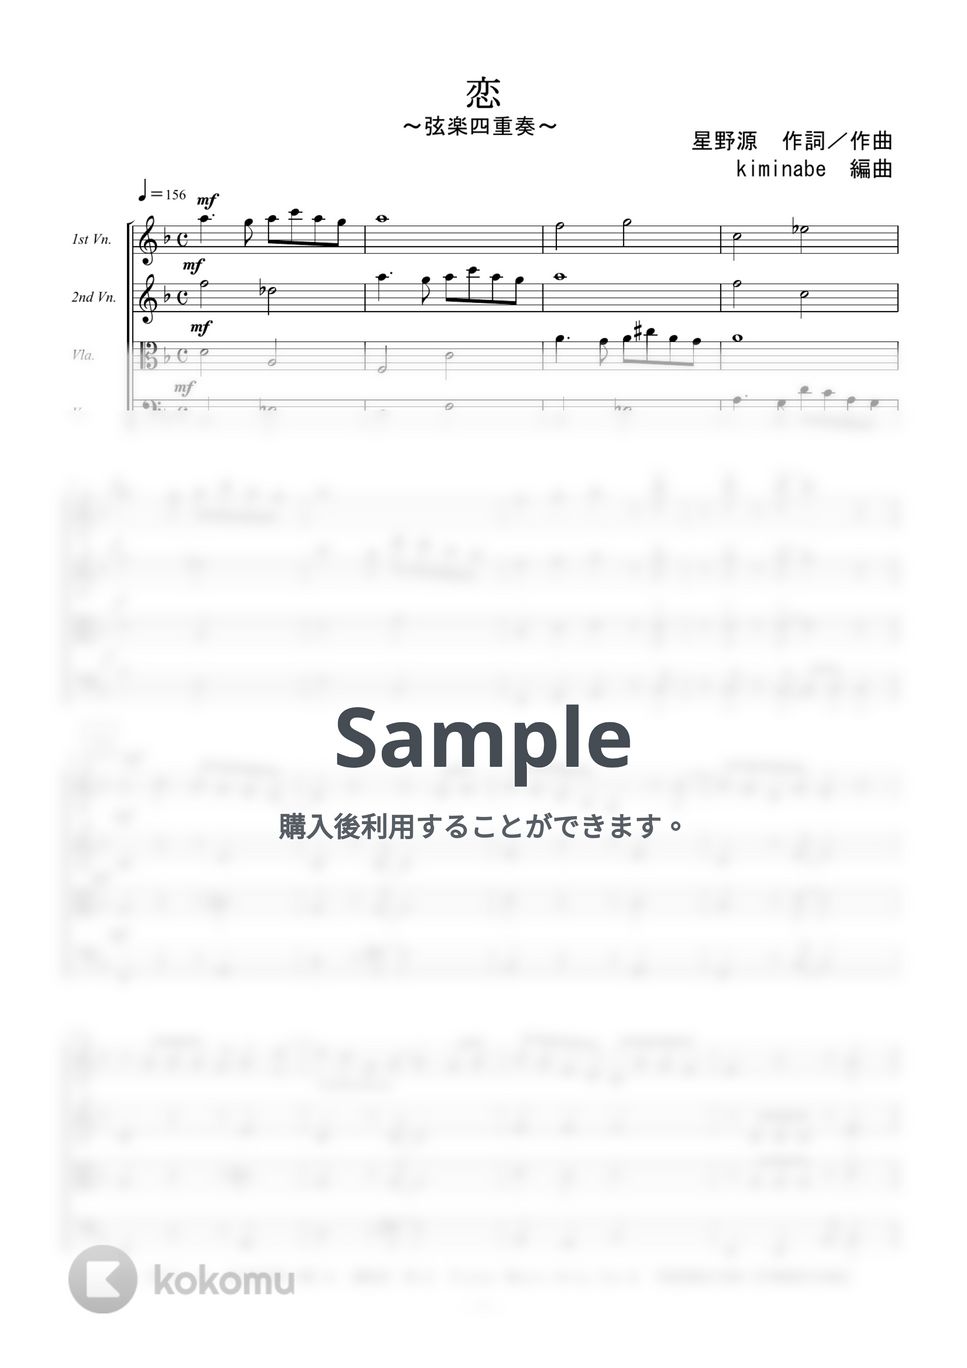 星野源 - 恋 (弦楽四重奏) by kiminabe